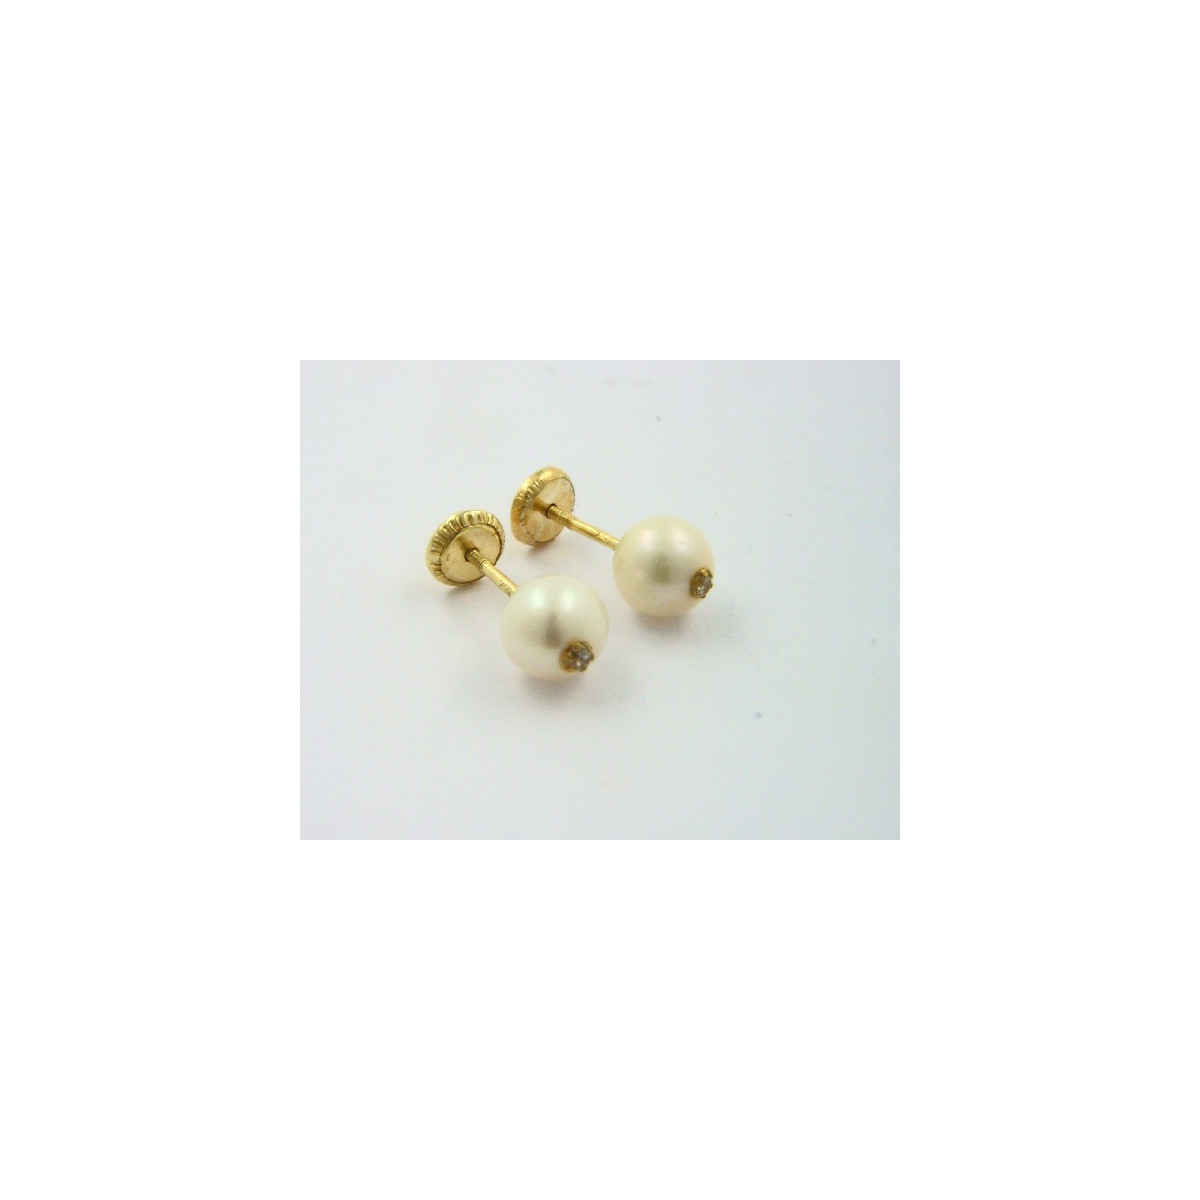 Pendientes oro 750 con perla y circonita